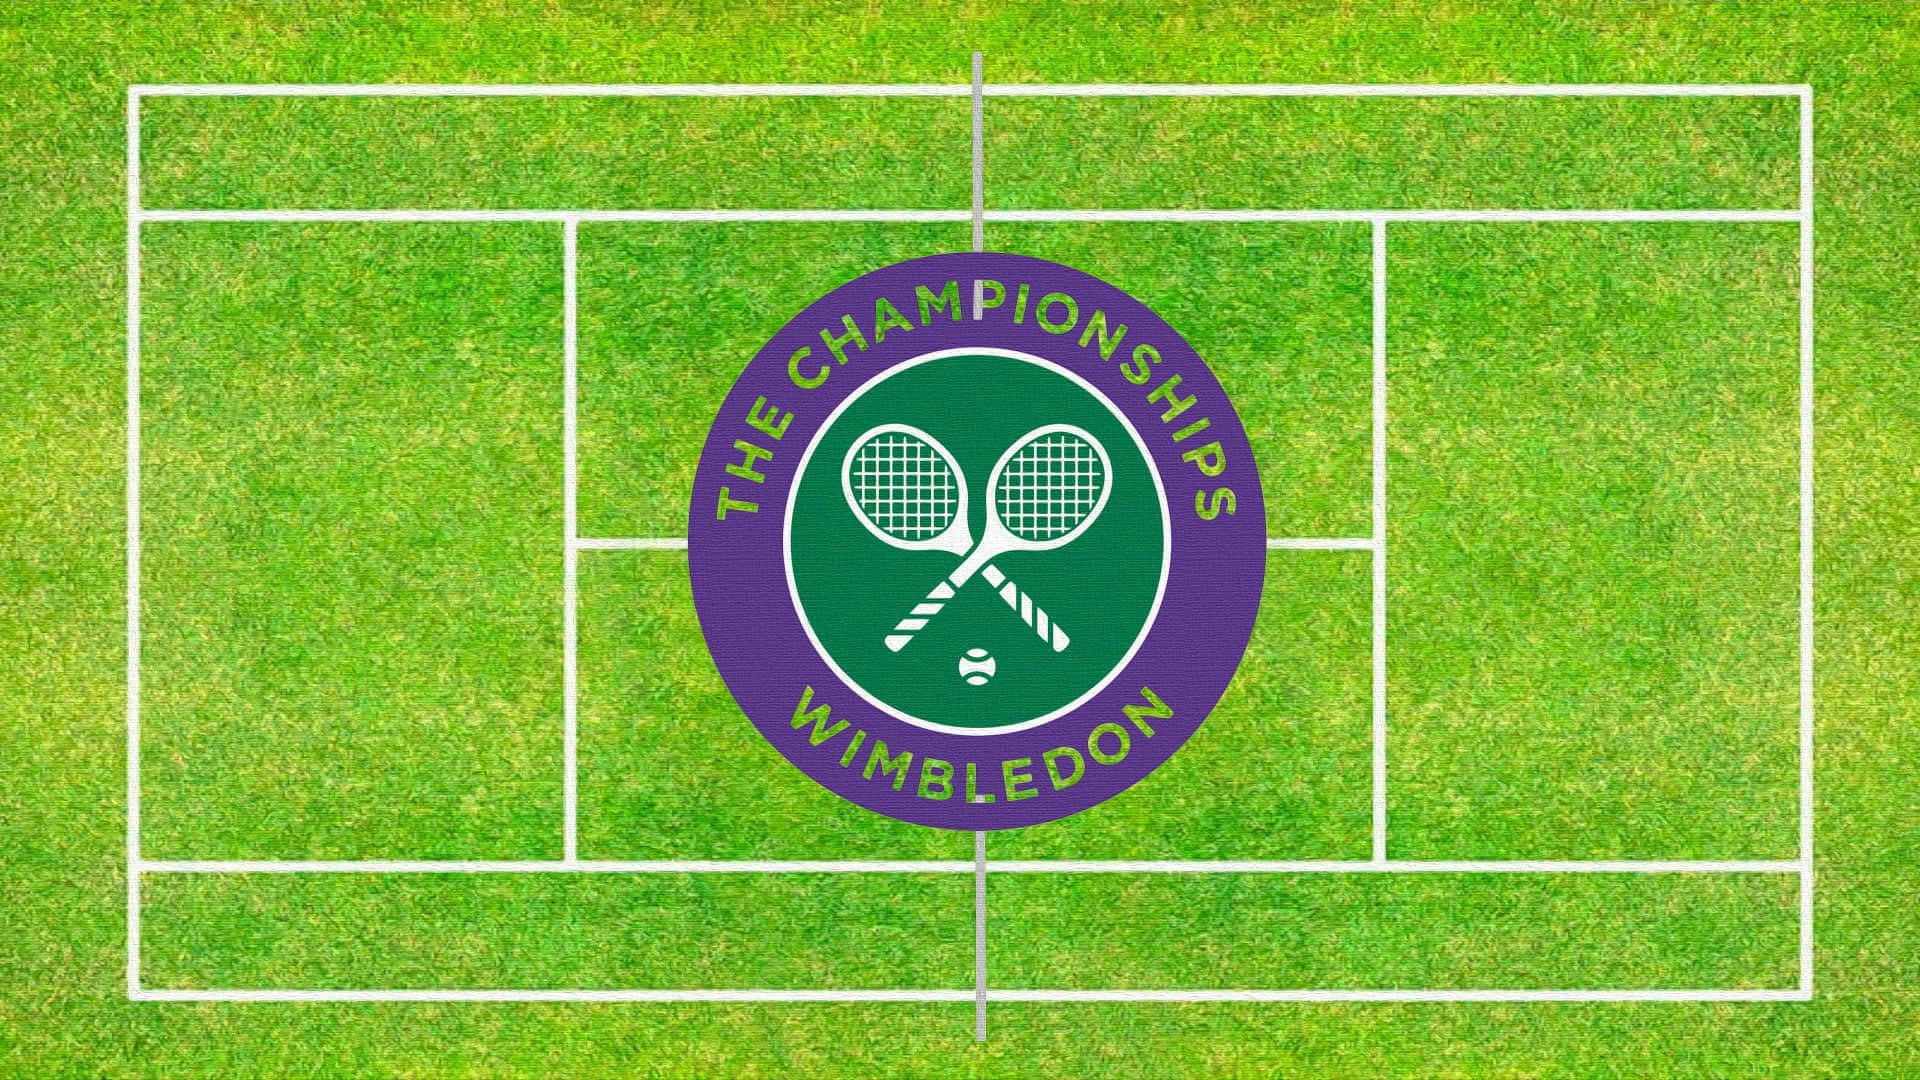 Logode Wimbledon De Tenis Sobre Césped